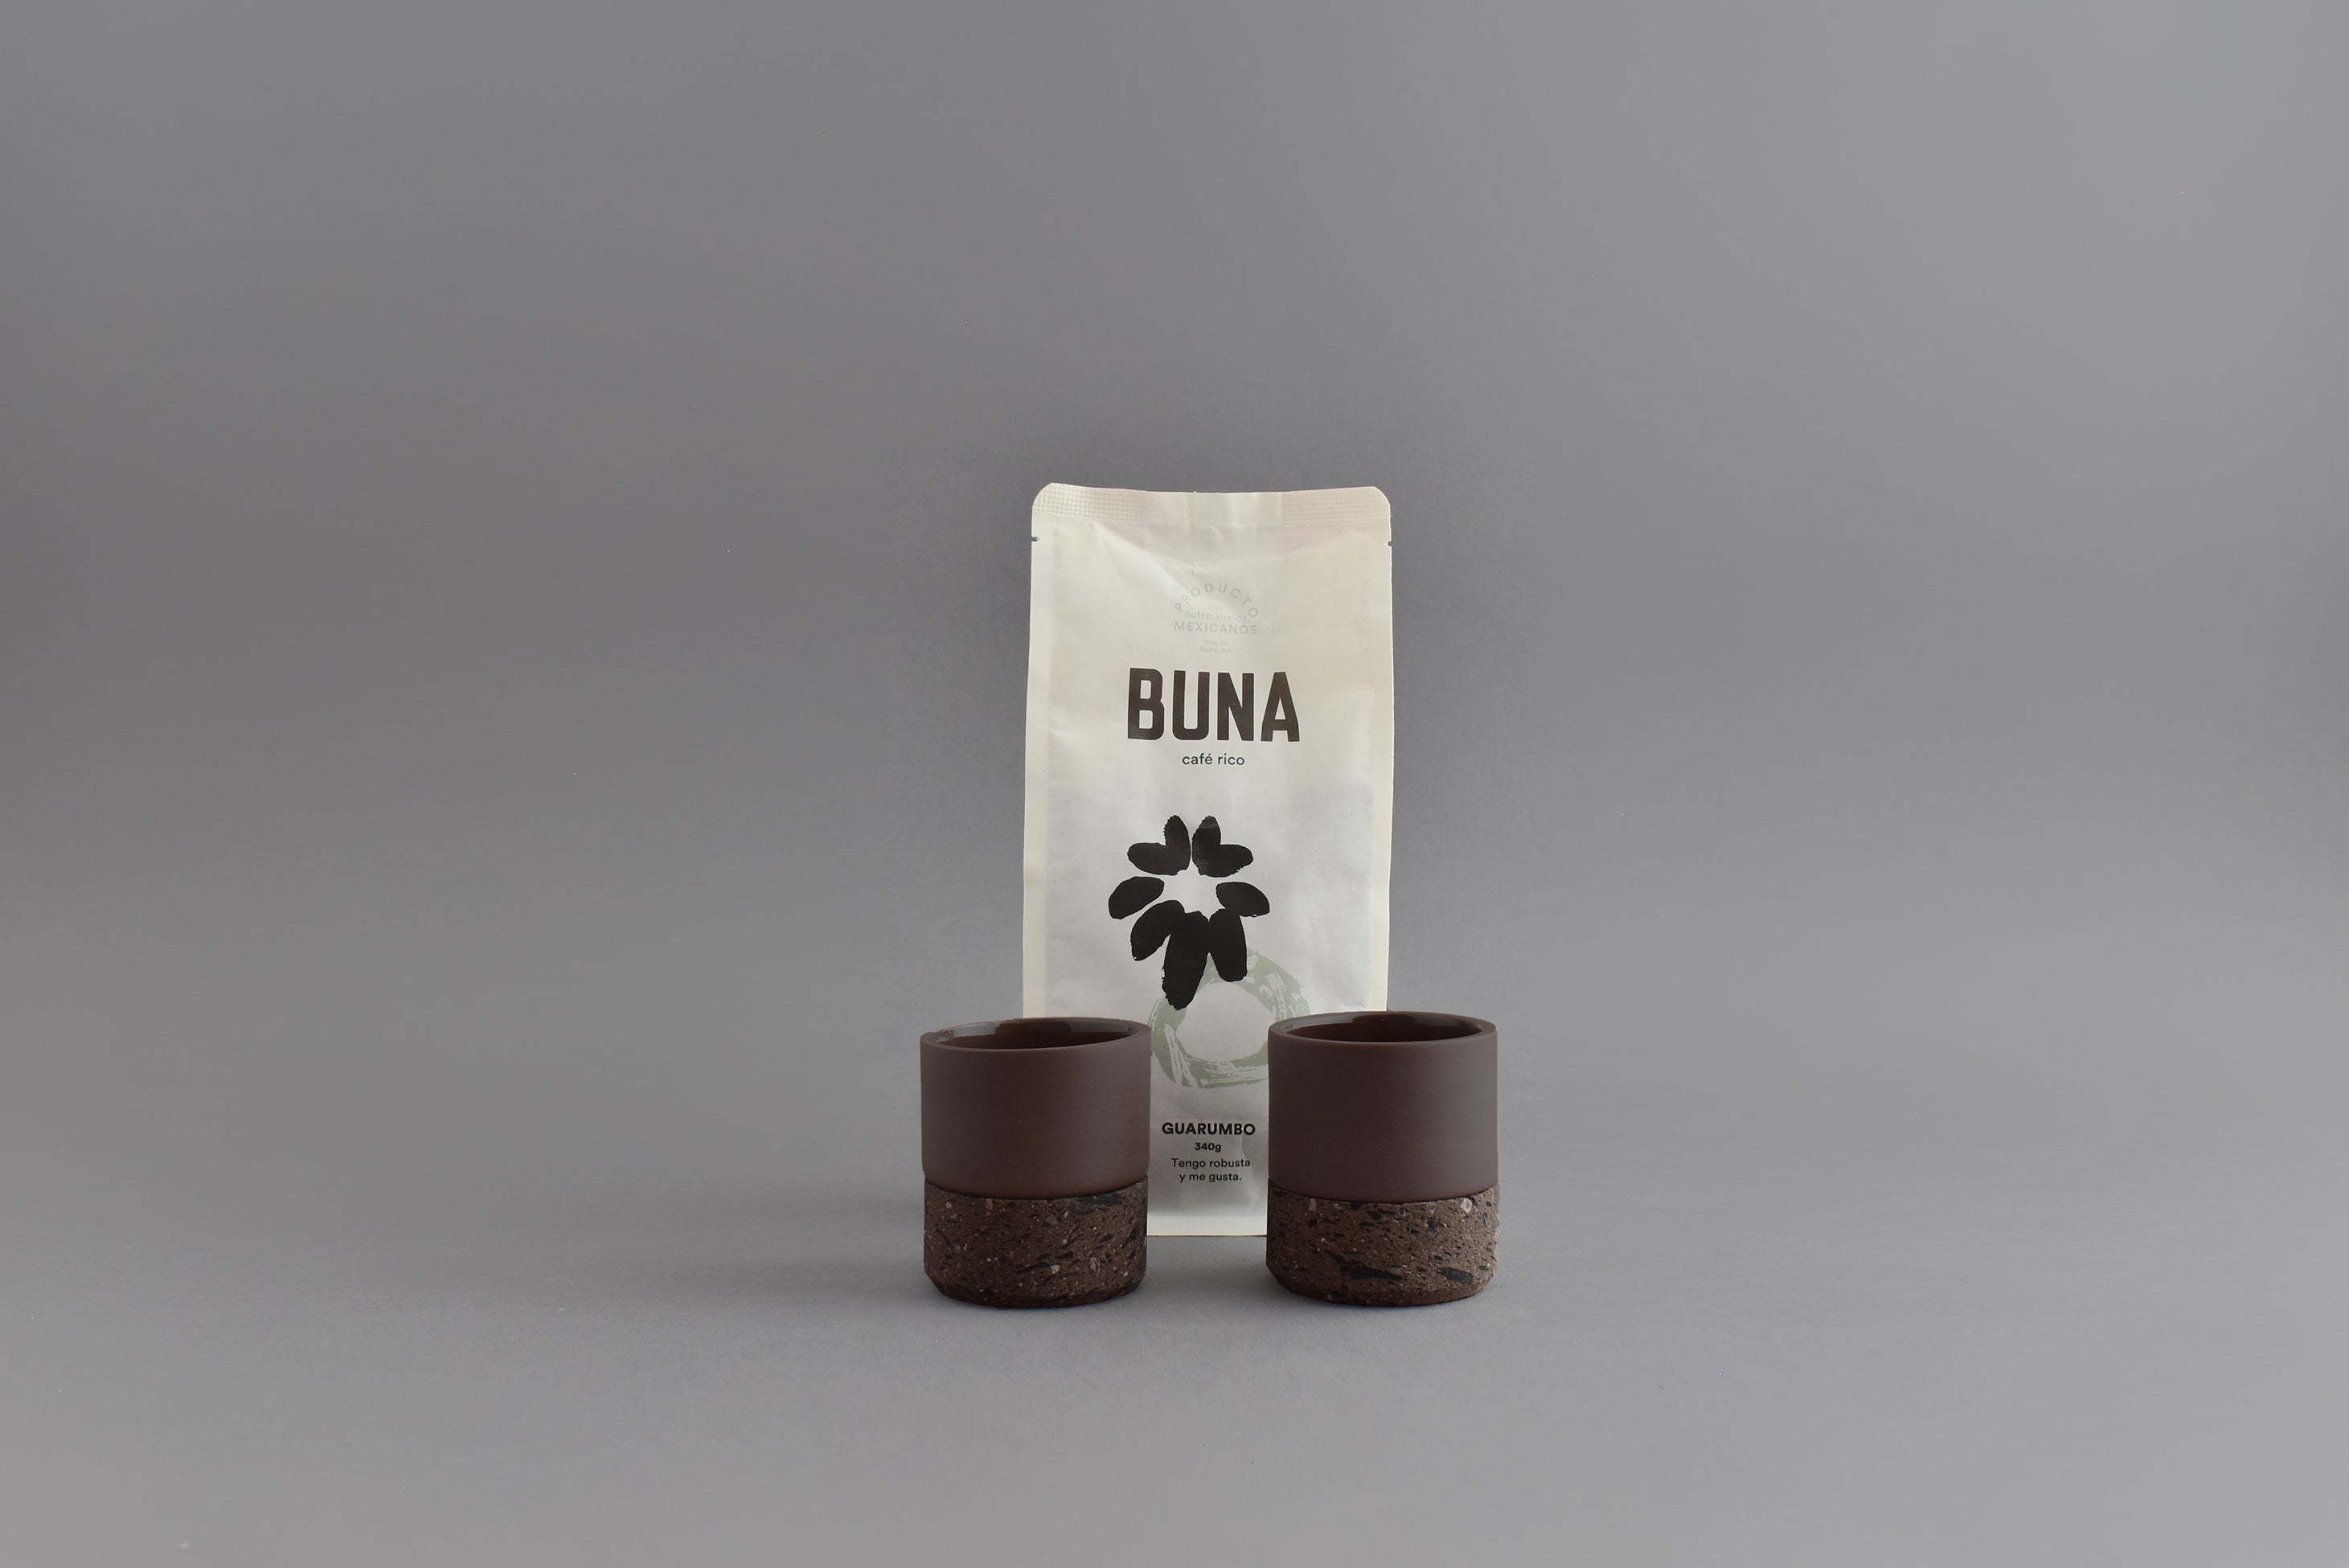 Dos vasos de cerámica café para espresso junto a una bolsa de café Buna